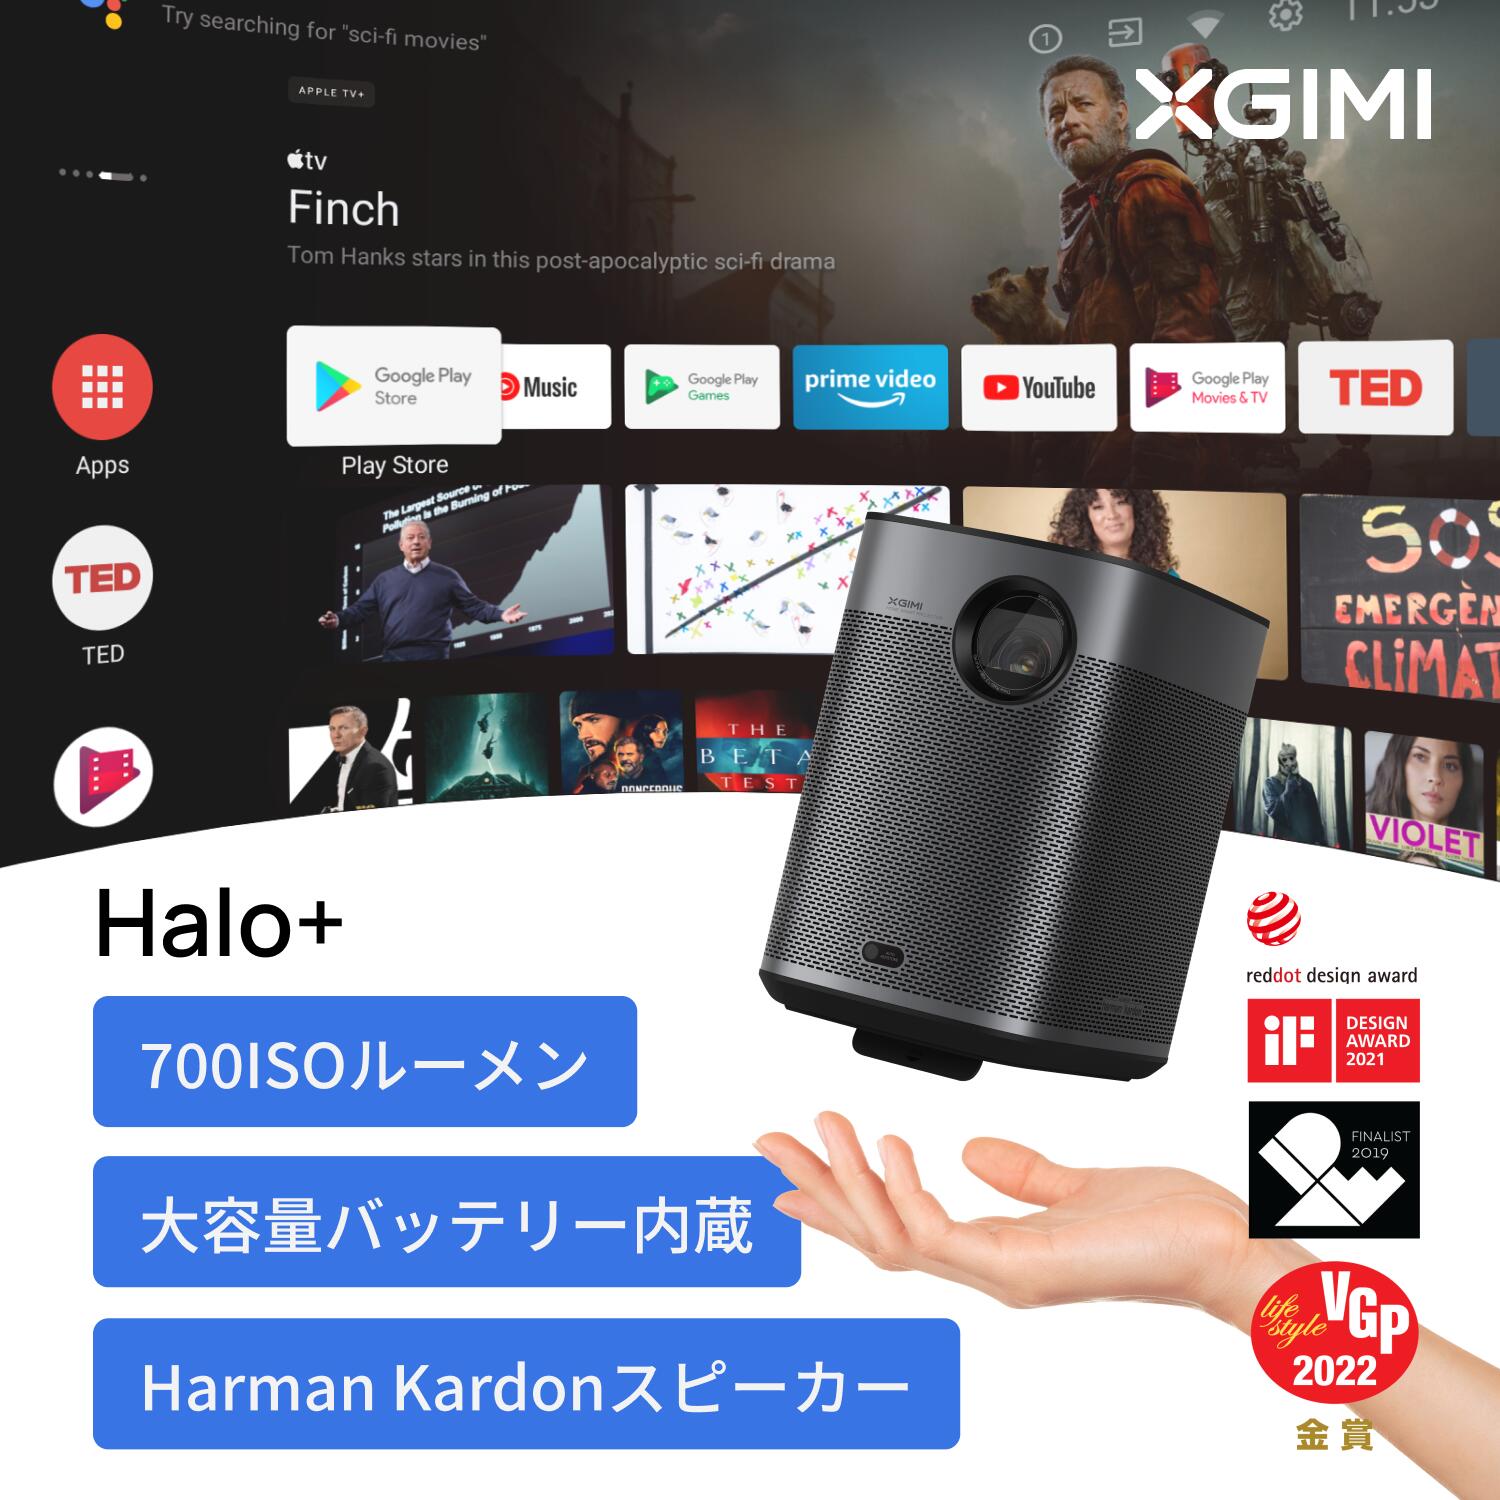 XGIMI Halo モバイルプロジェクター フルHD 1080p Android TV 10.0搭載 【Harman Kardonスピーカー / オートフォーカス / 自動台形補正 / bluetooth対応 / HDR10 / 低遅延 】